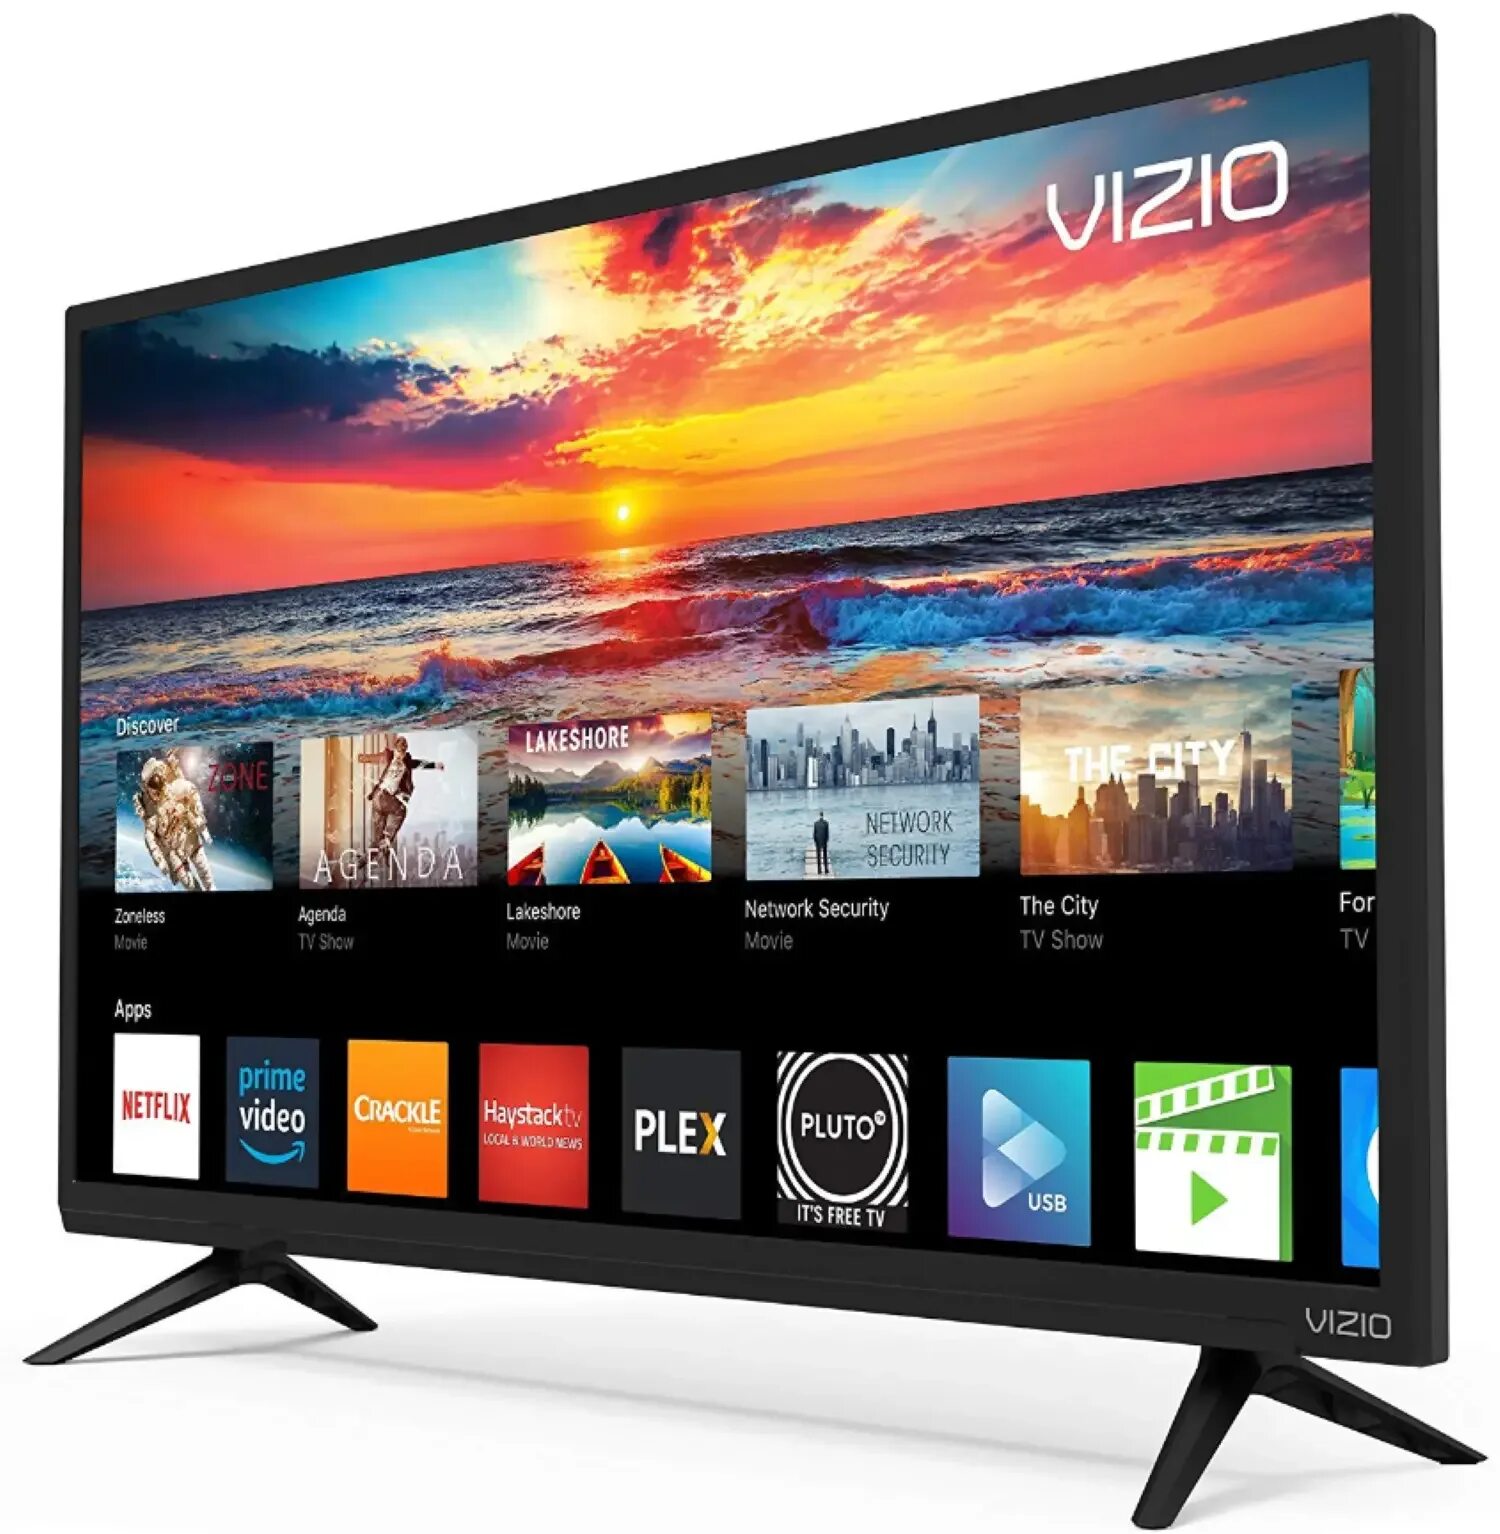 Vizio SMARTCAST Smart TV телевизор. Смарт ТВ телевизор 32 дюйма и Wi-Fi. Телевизоры 32 Smart TV китайские. Смарт ТВ 100 дюймов китайские недорогие.